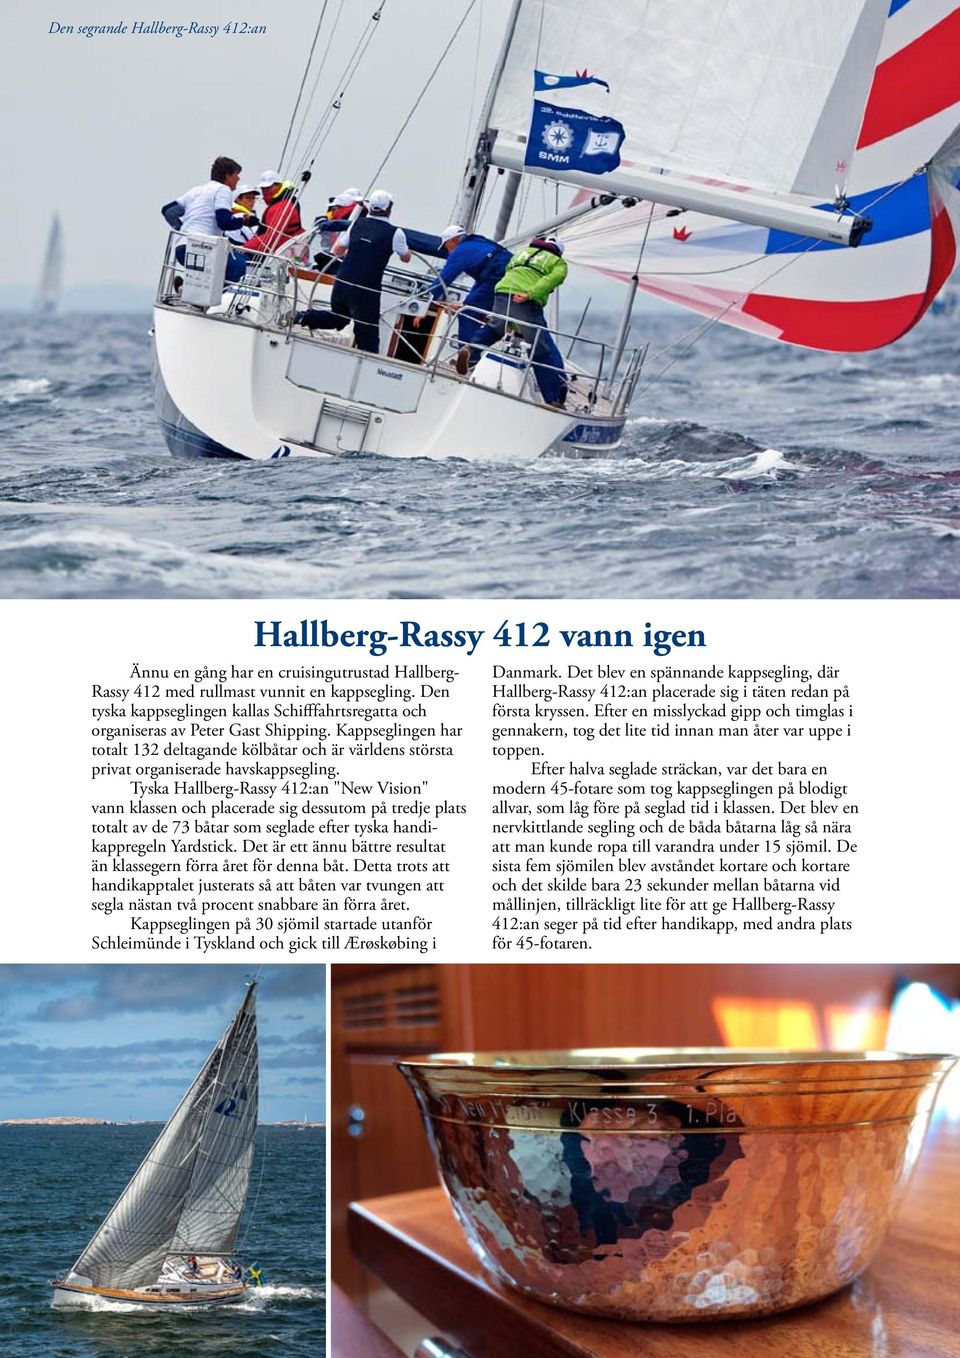 Tyska Hallberg-Rassy 412:an "New Vision" vann klassen och placerade sig dessutom på tredje plats totalt av de 73 båtar som seglade efter tyska handikappregeln Yardstick.